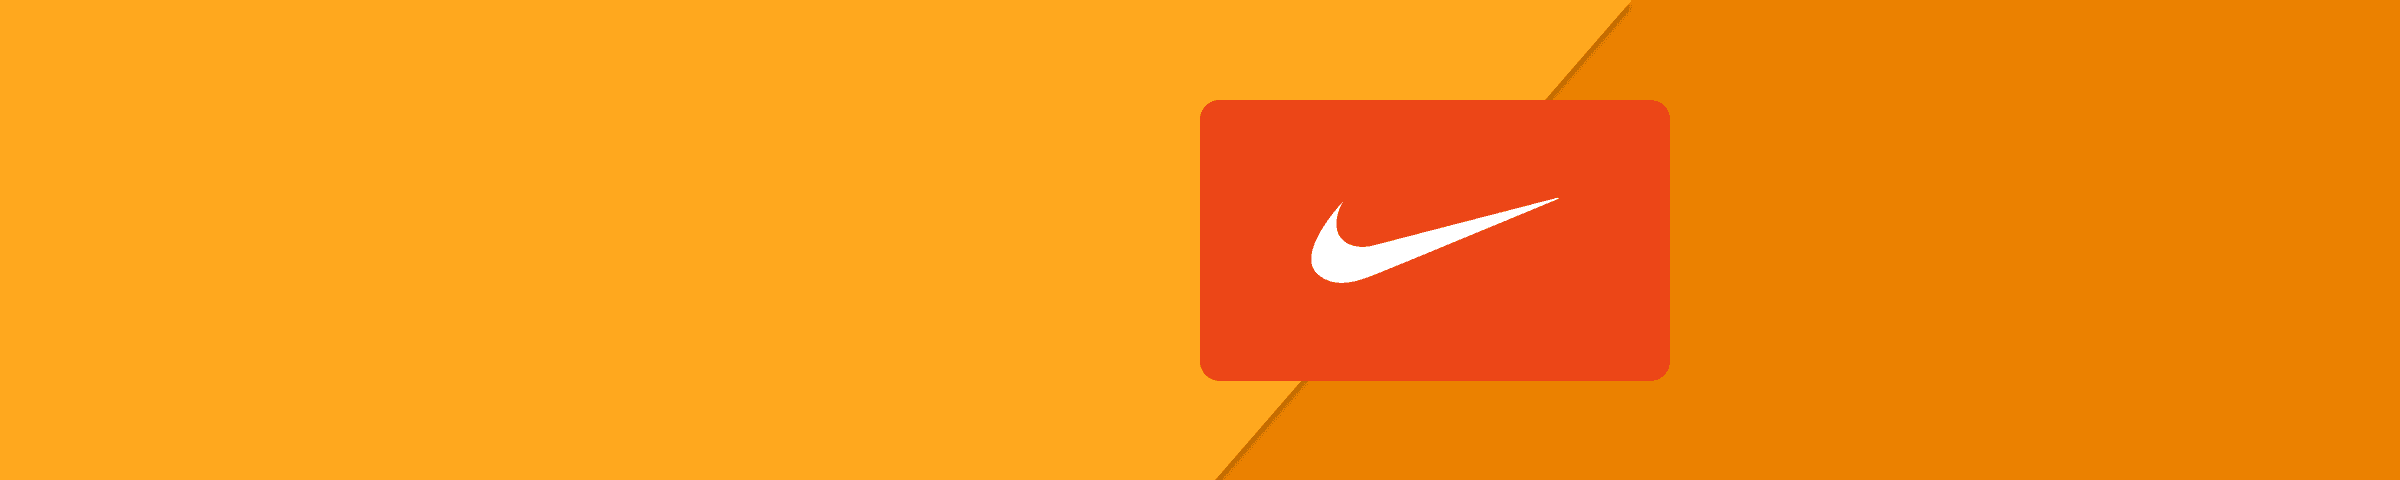 Nike Gutscheinkarte